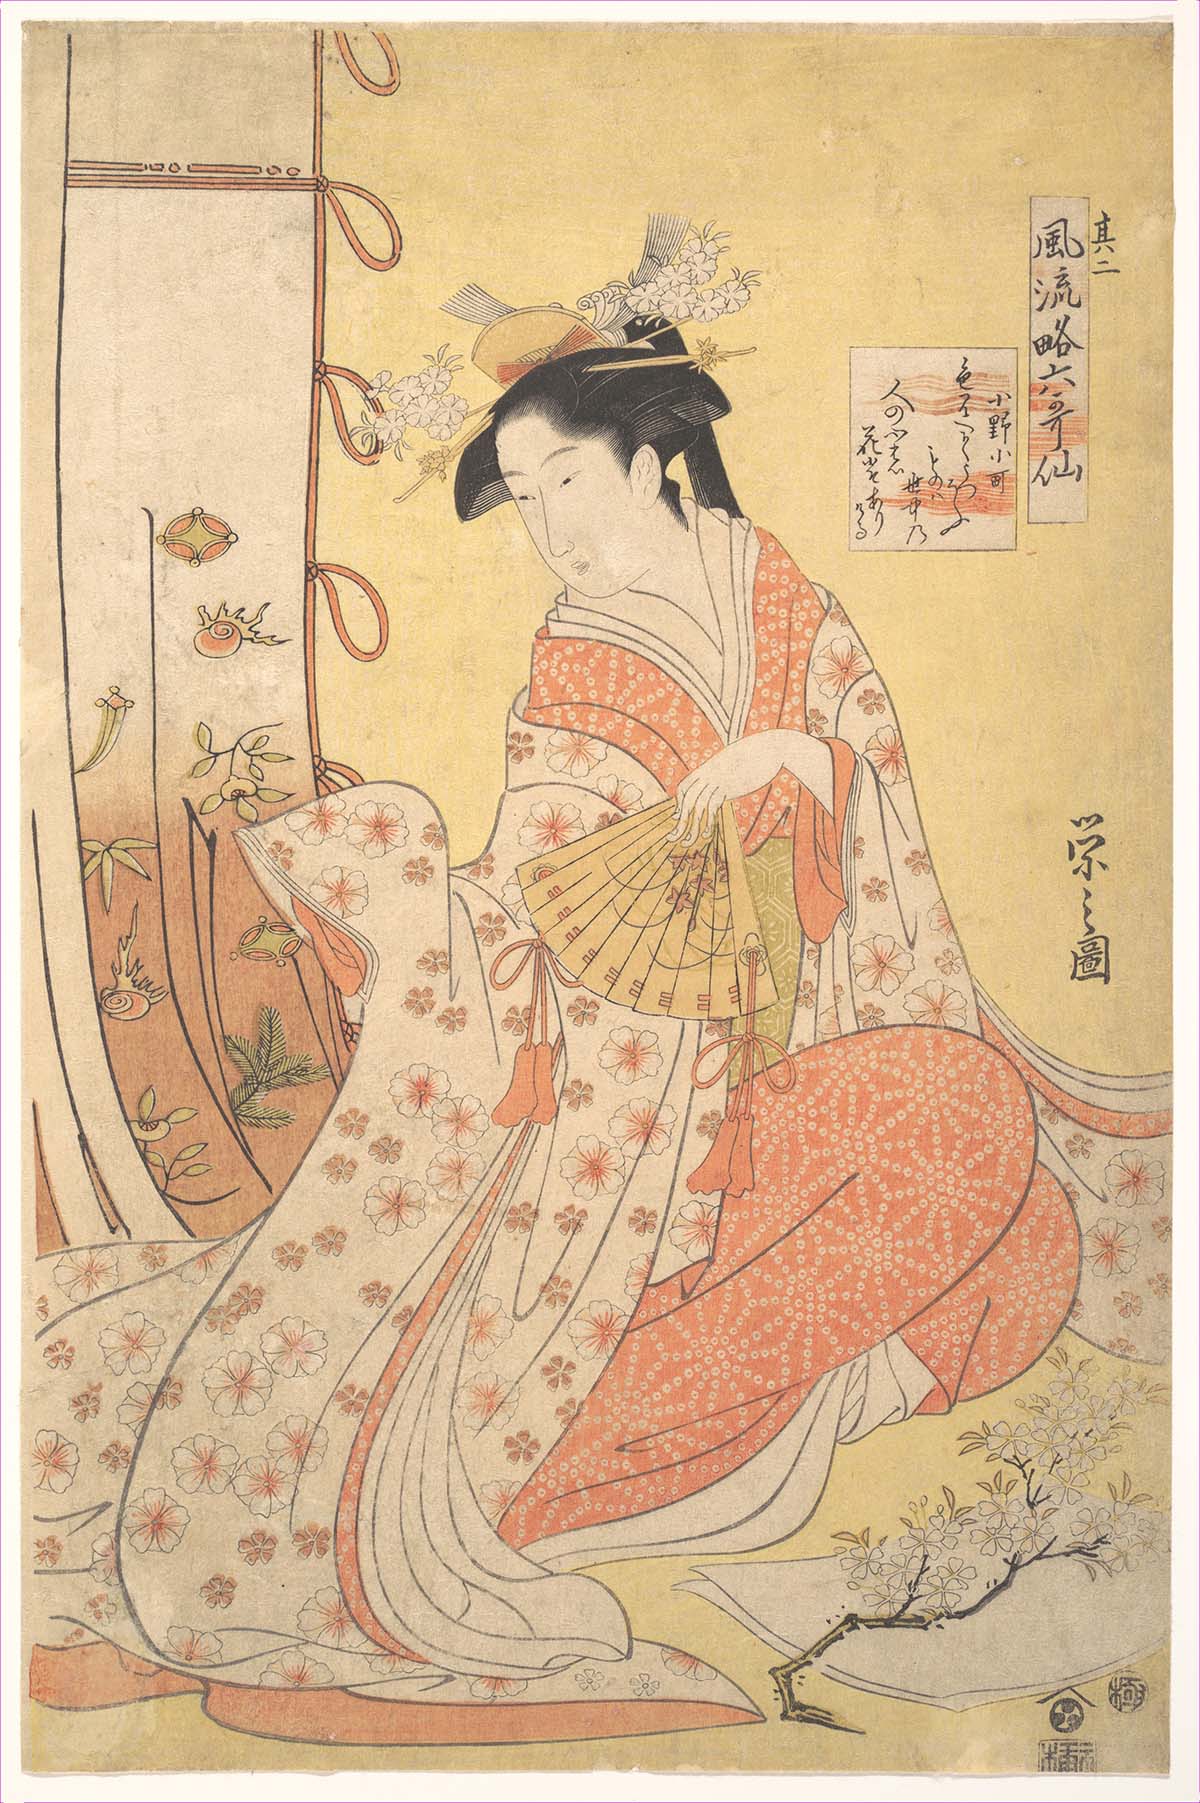 Imagem do período Edo de uma mulher com traços orientais tocando um instrumento 